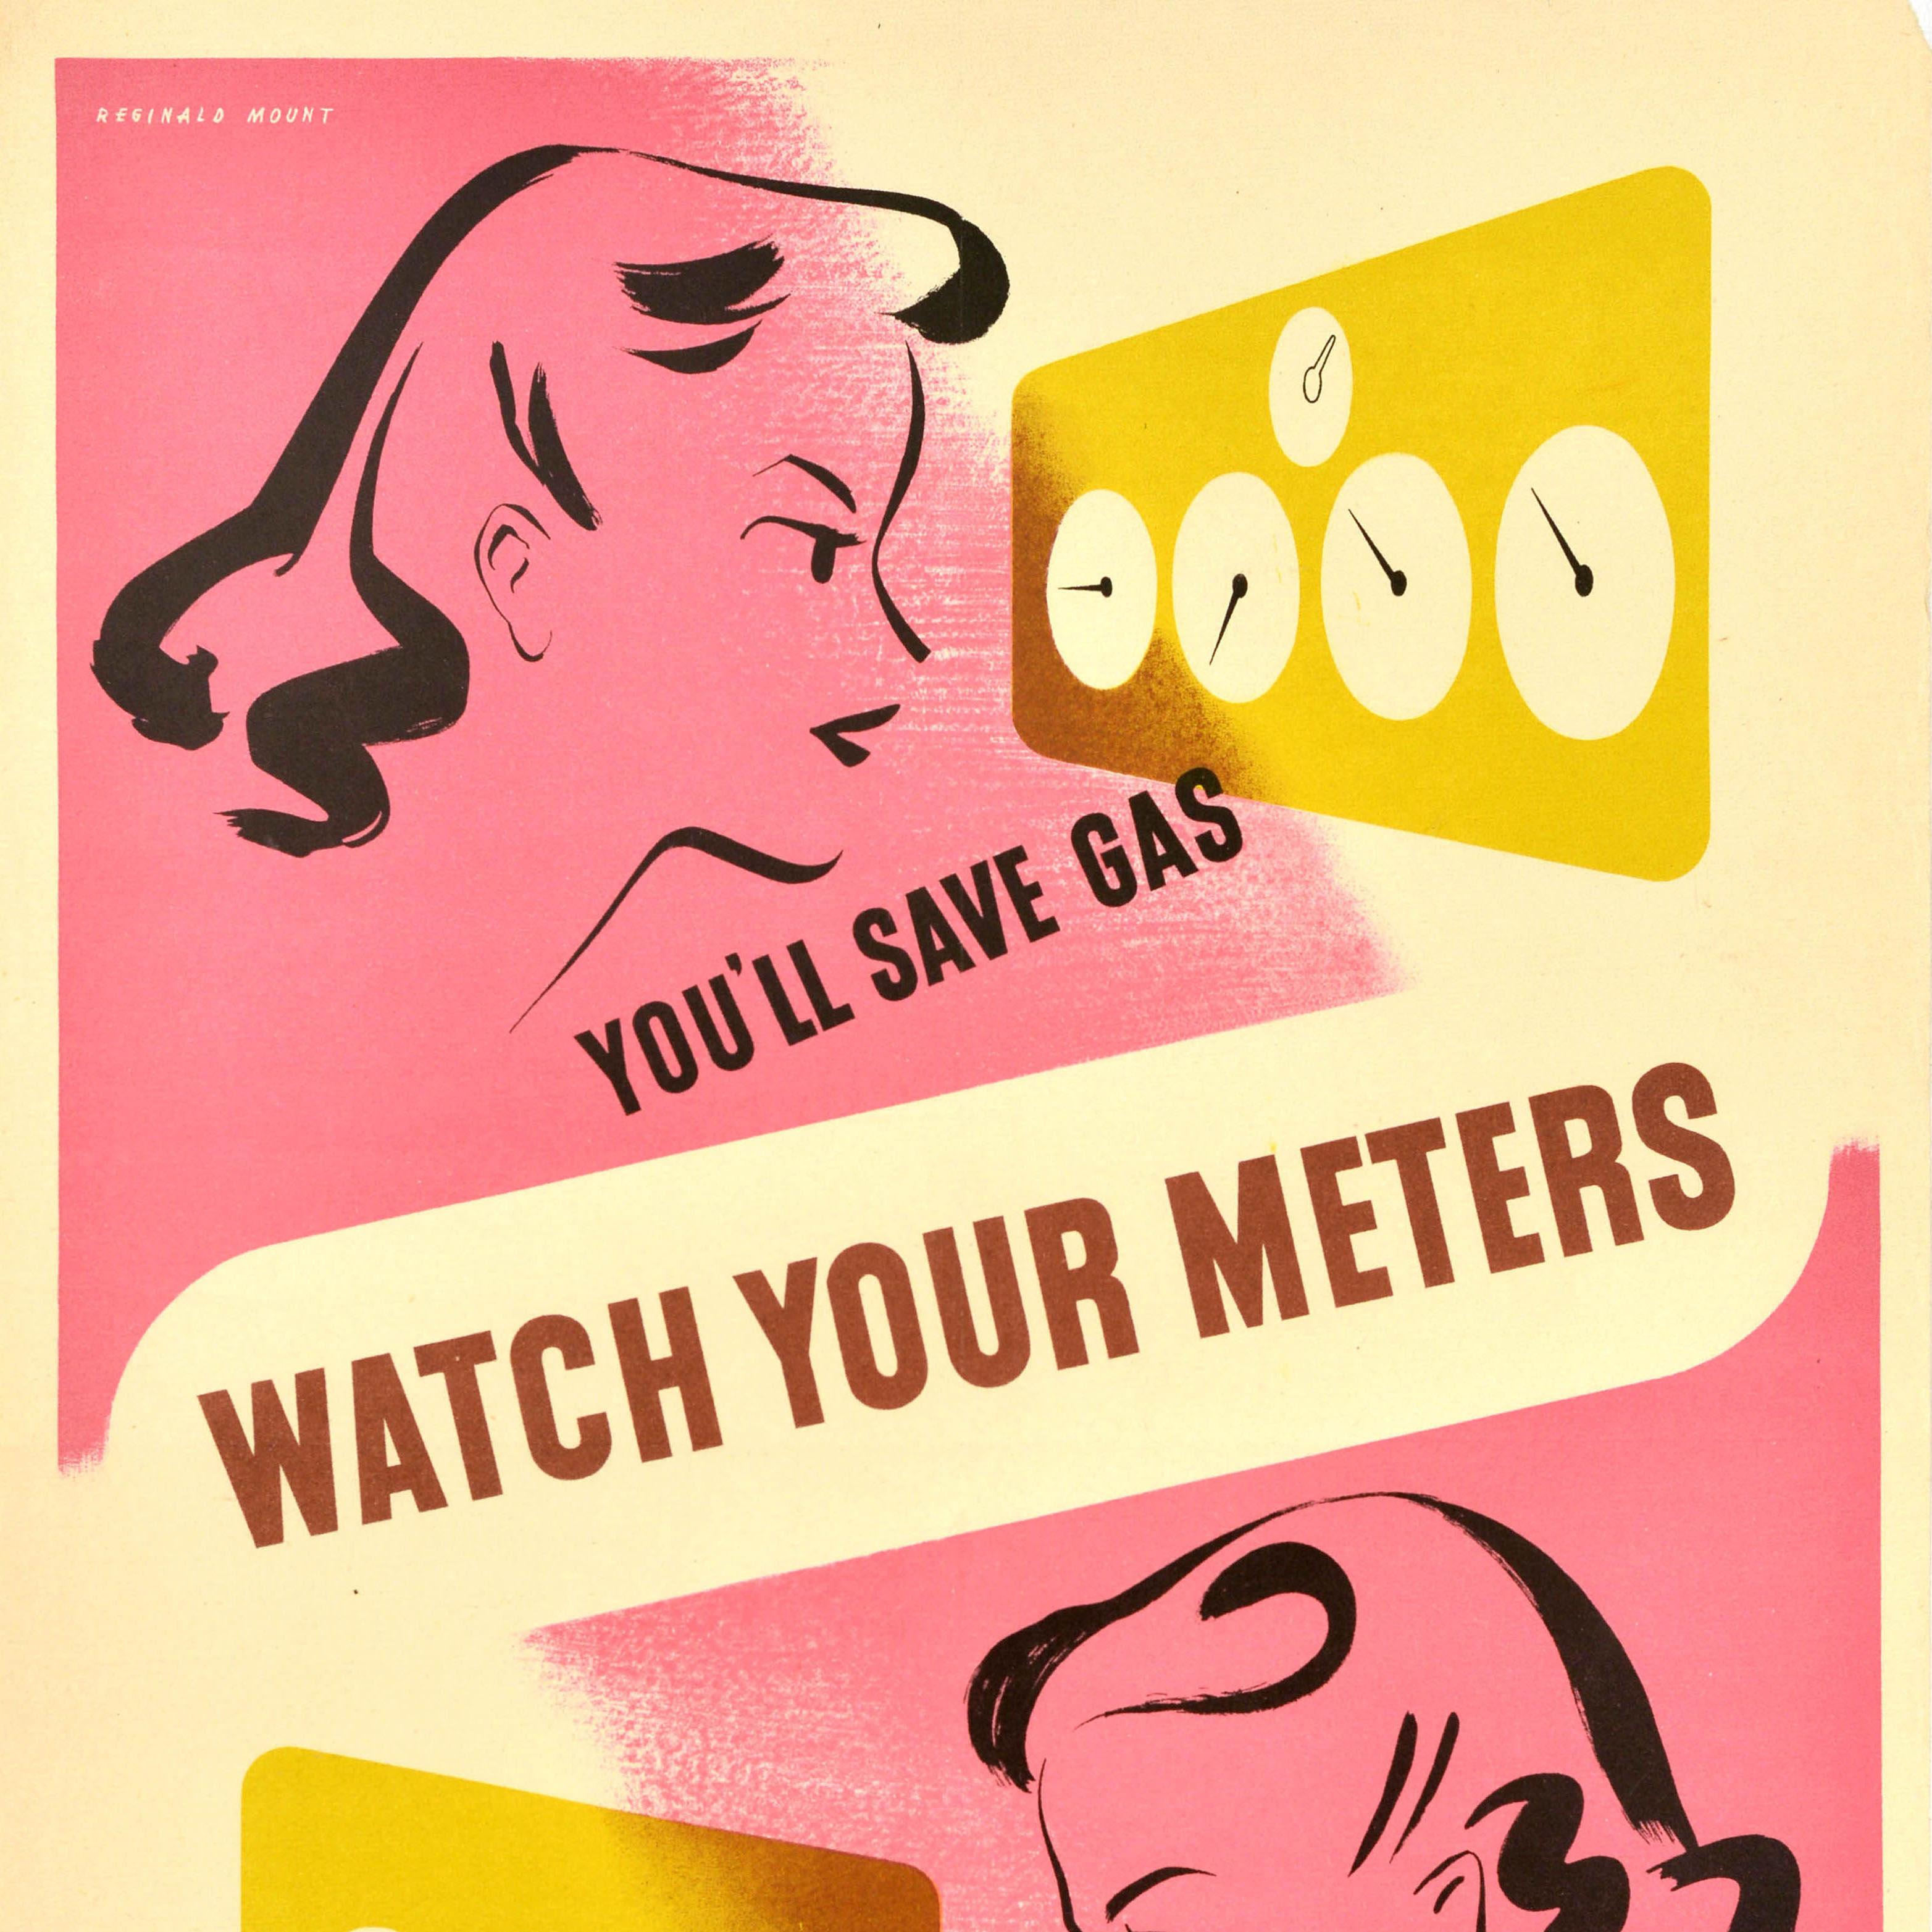 Original Vintage Krieg Energiegassparendes Propaganda-Poster, „Uhr Ihre Meter“, Vintage, WWII (Orange), Print, von Reginald Mount